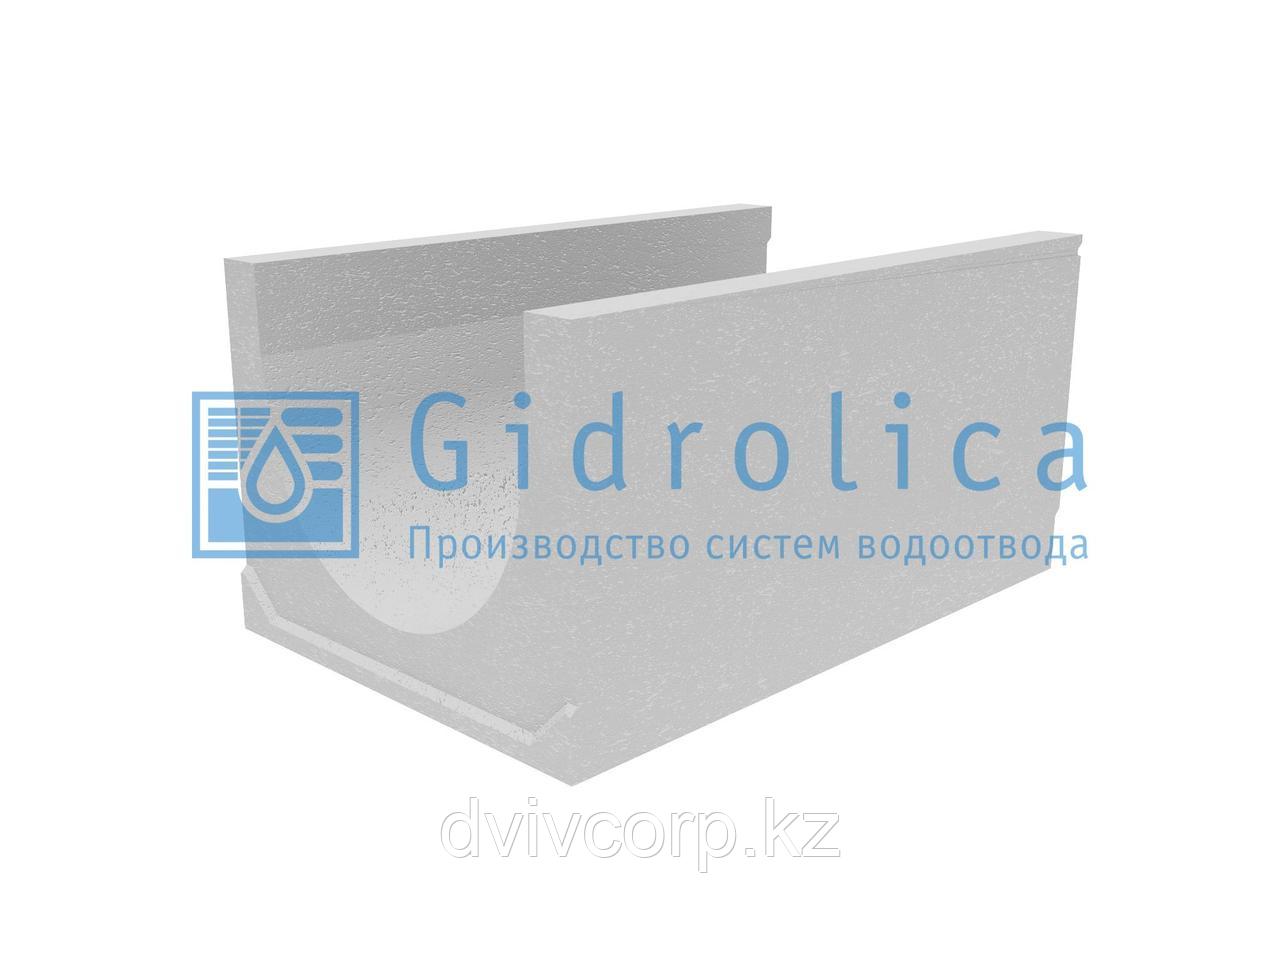 Лоток водоотводный бетонный коробчатый (СО-500мм), с уклоном 0,5%  КUу 100.65(50).52(43) - BGU-XL, № 14